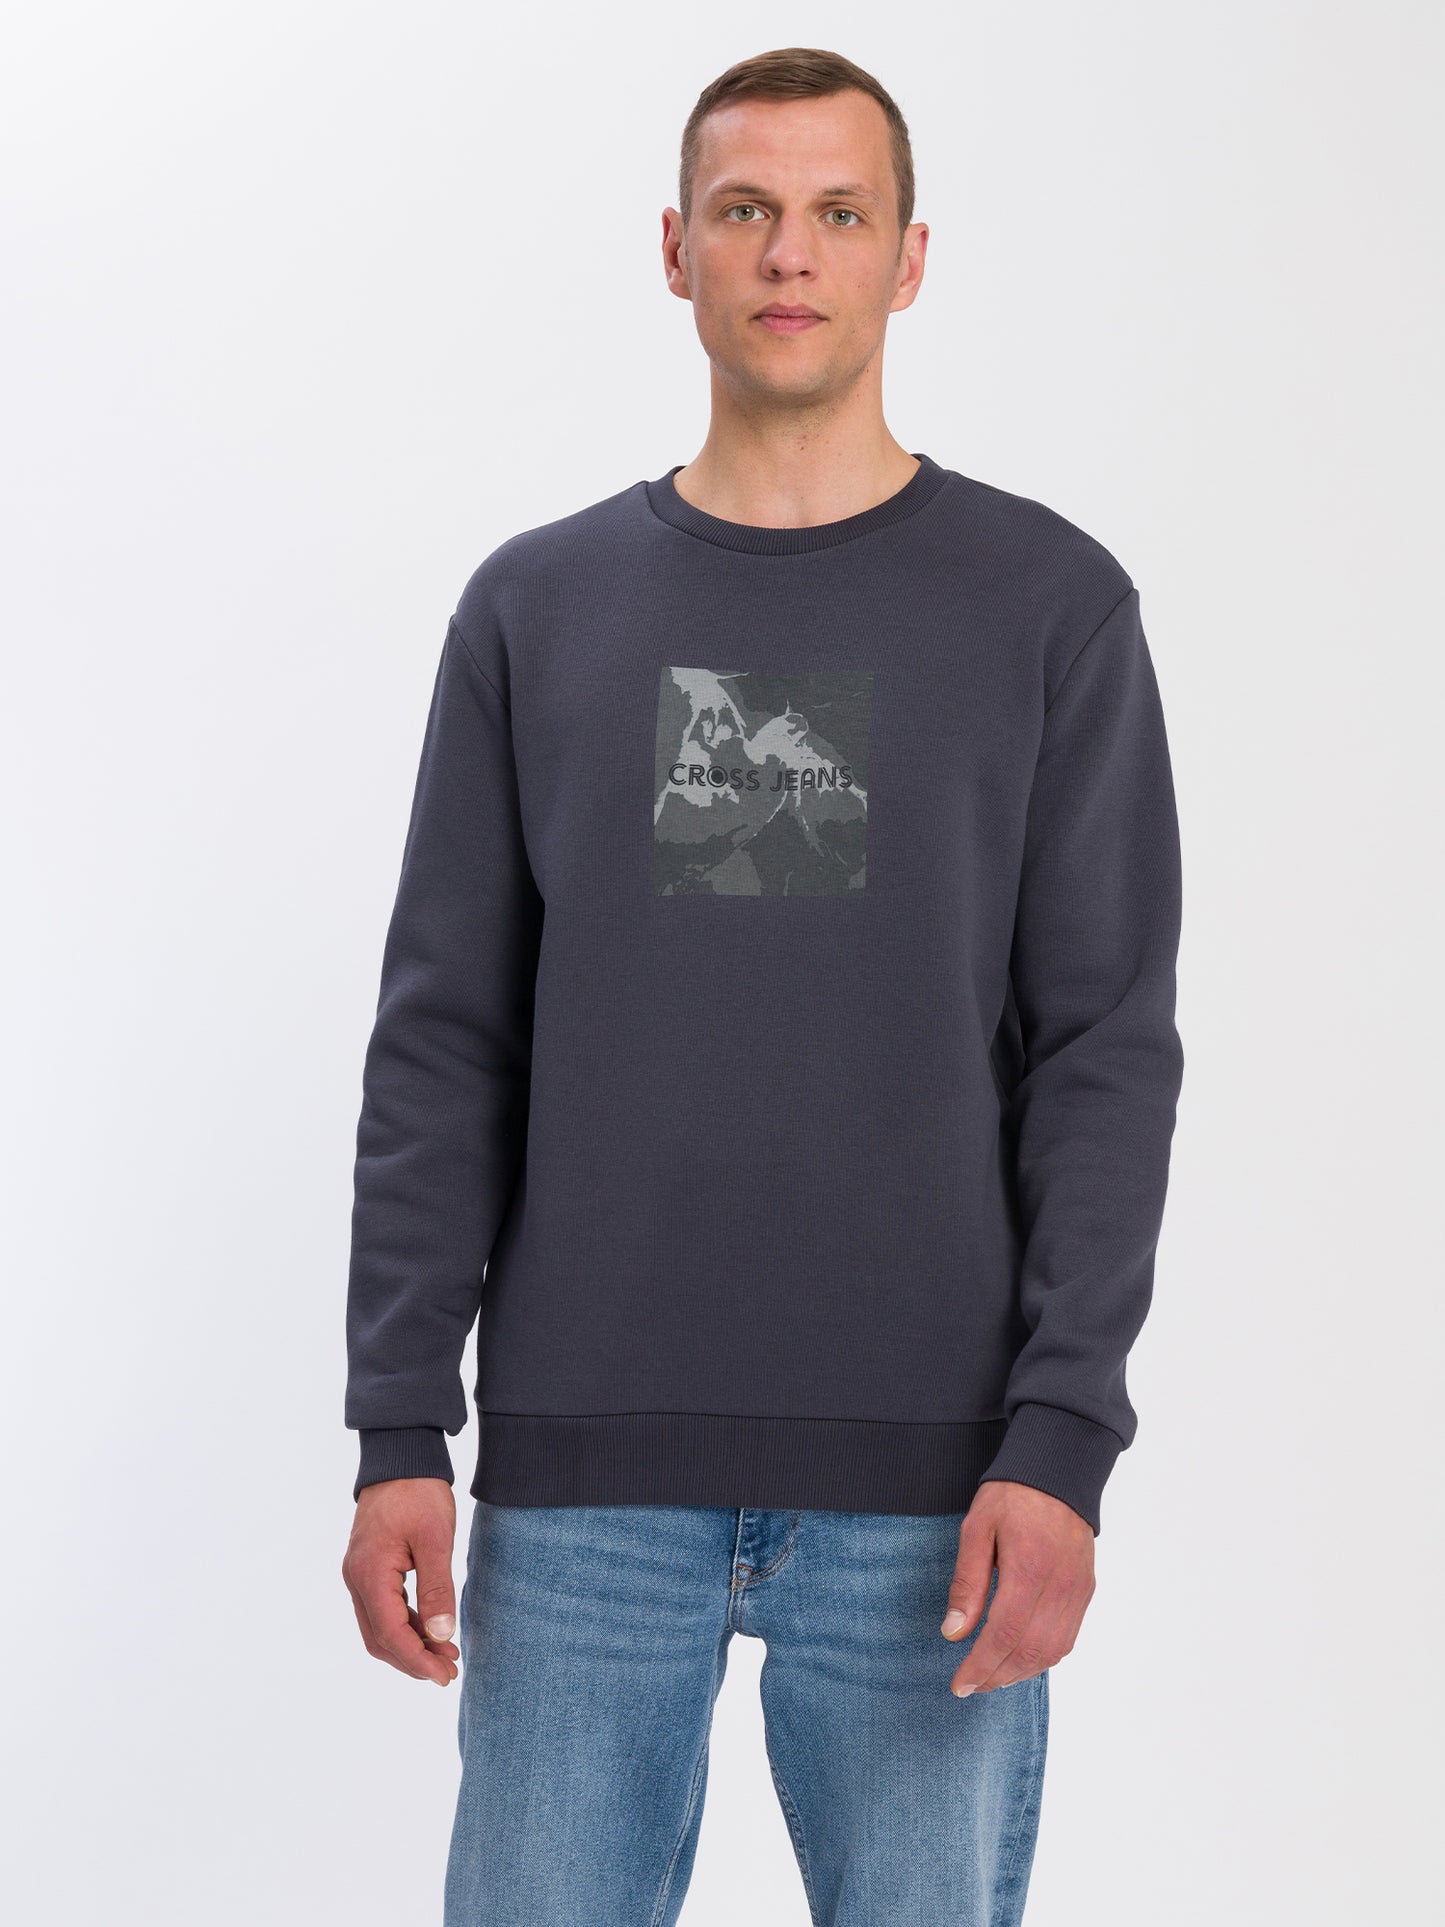 Herren Regular Sweatshirt mit Print dunkelgrau